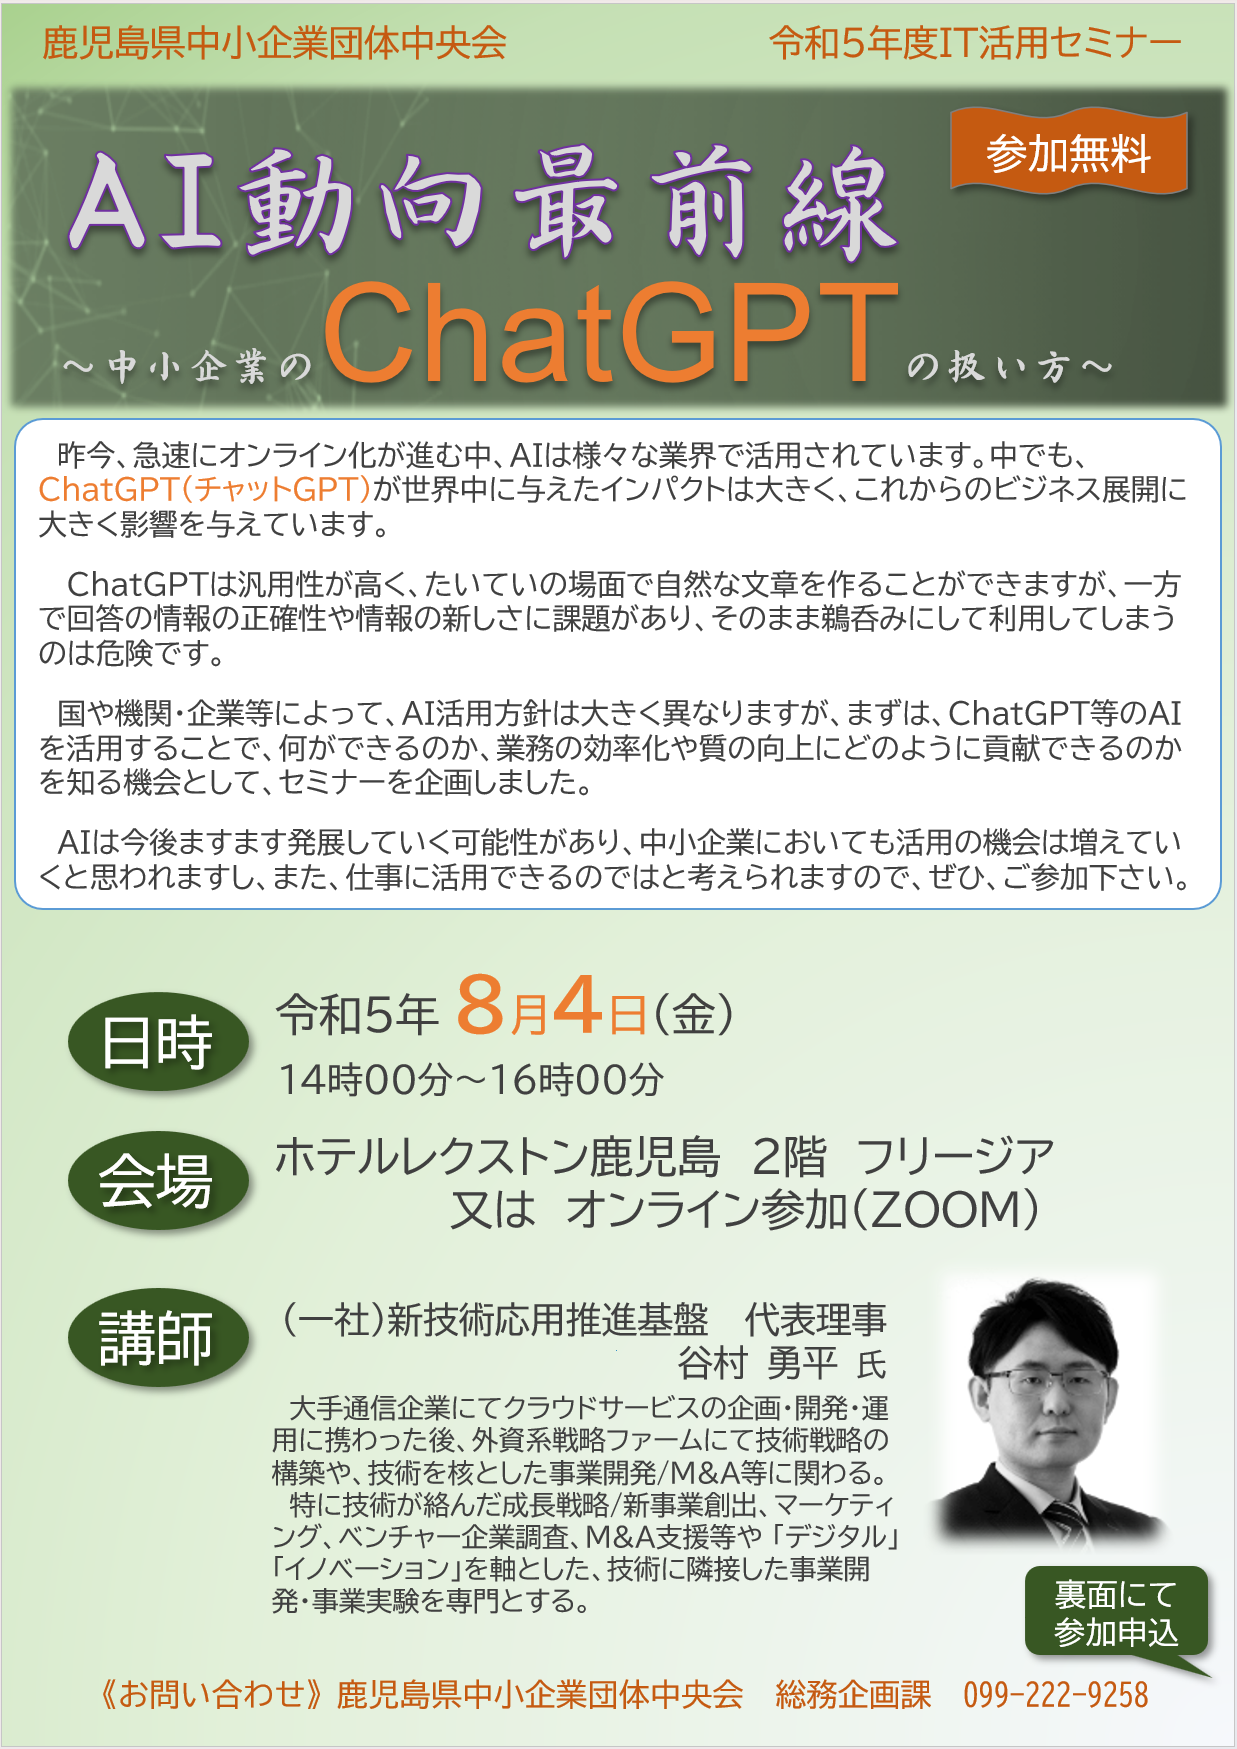 ChatGPTセミナー